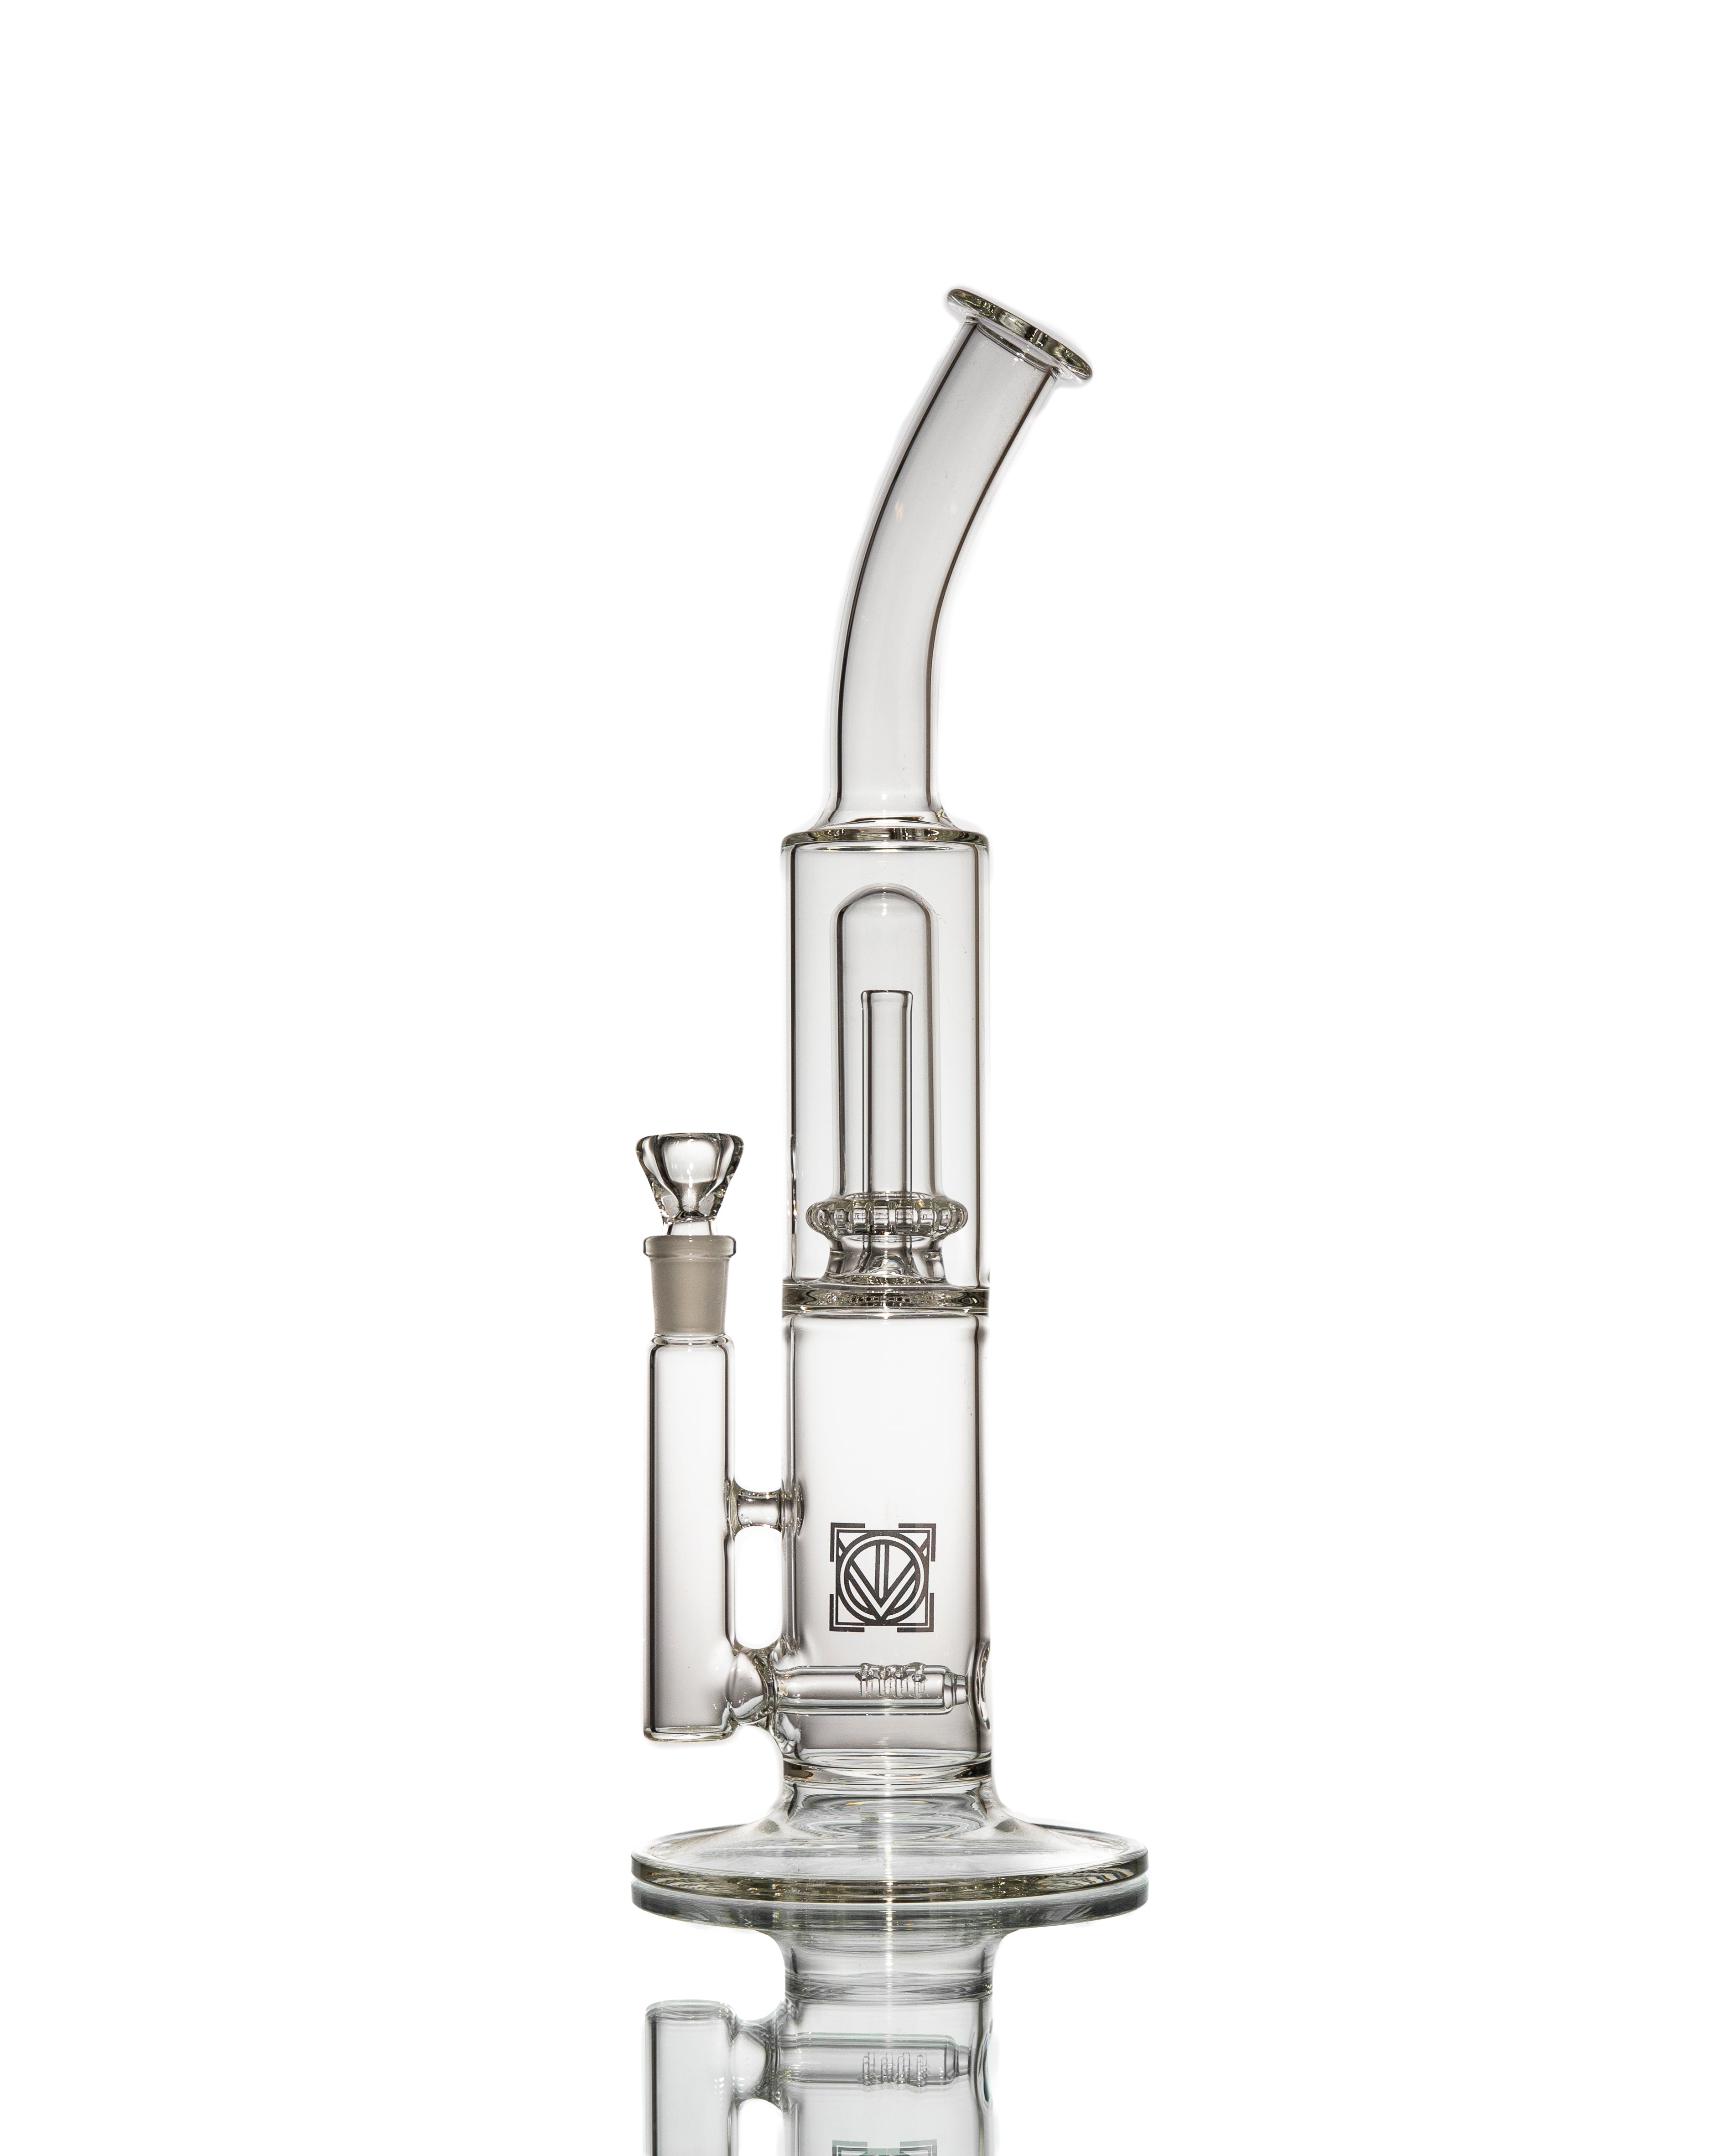 Licit Glass - "Mighty Fine Smoker Jr." Bent Neck Bubbler